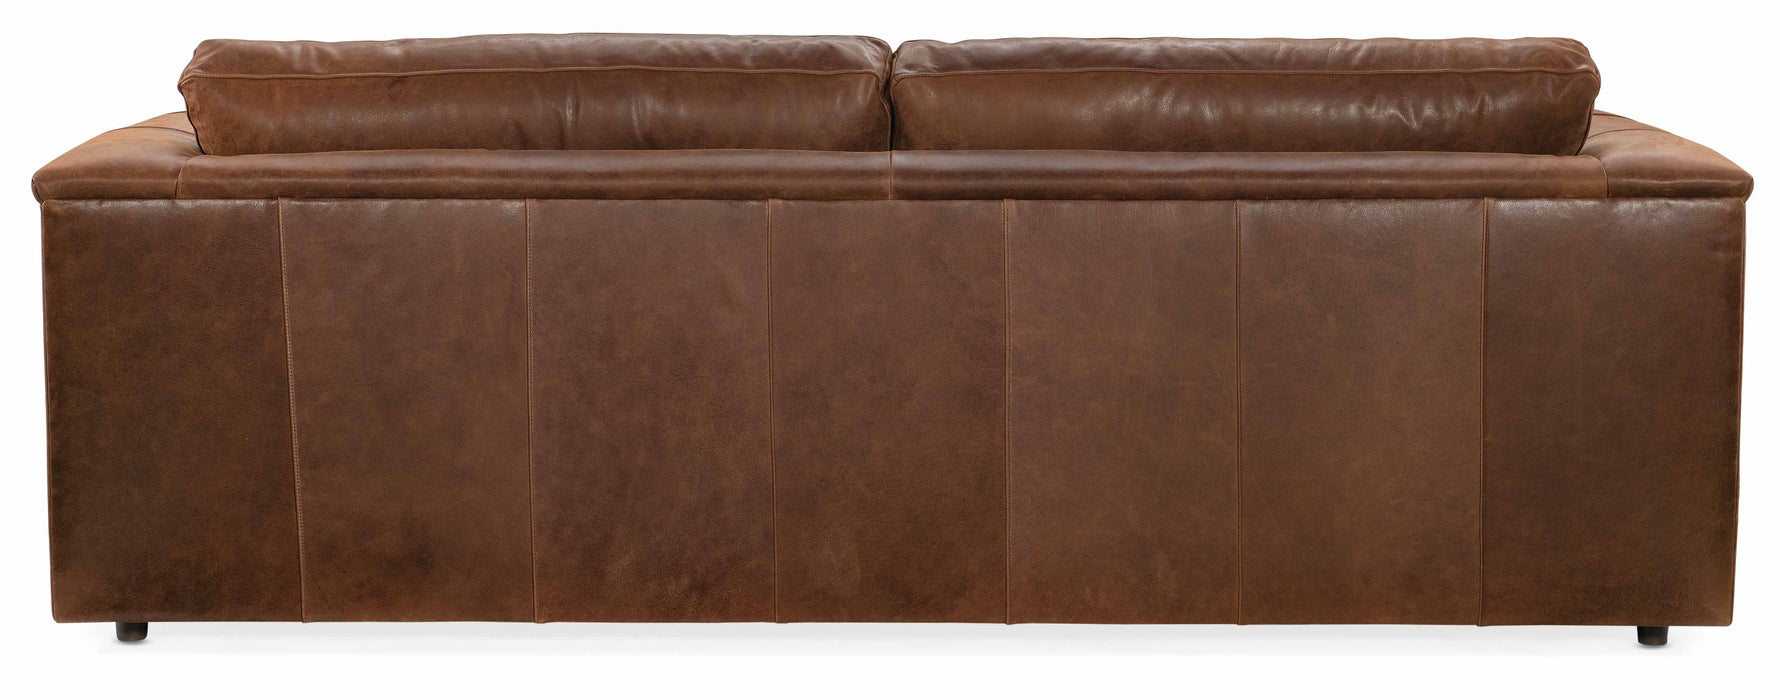 Crew Leather Sofa